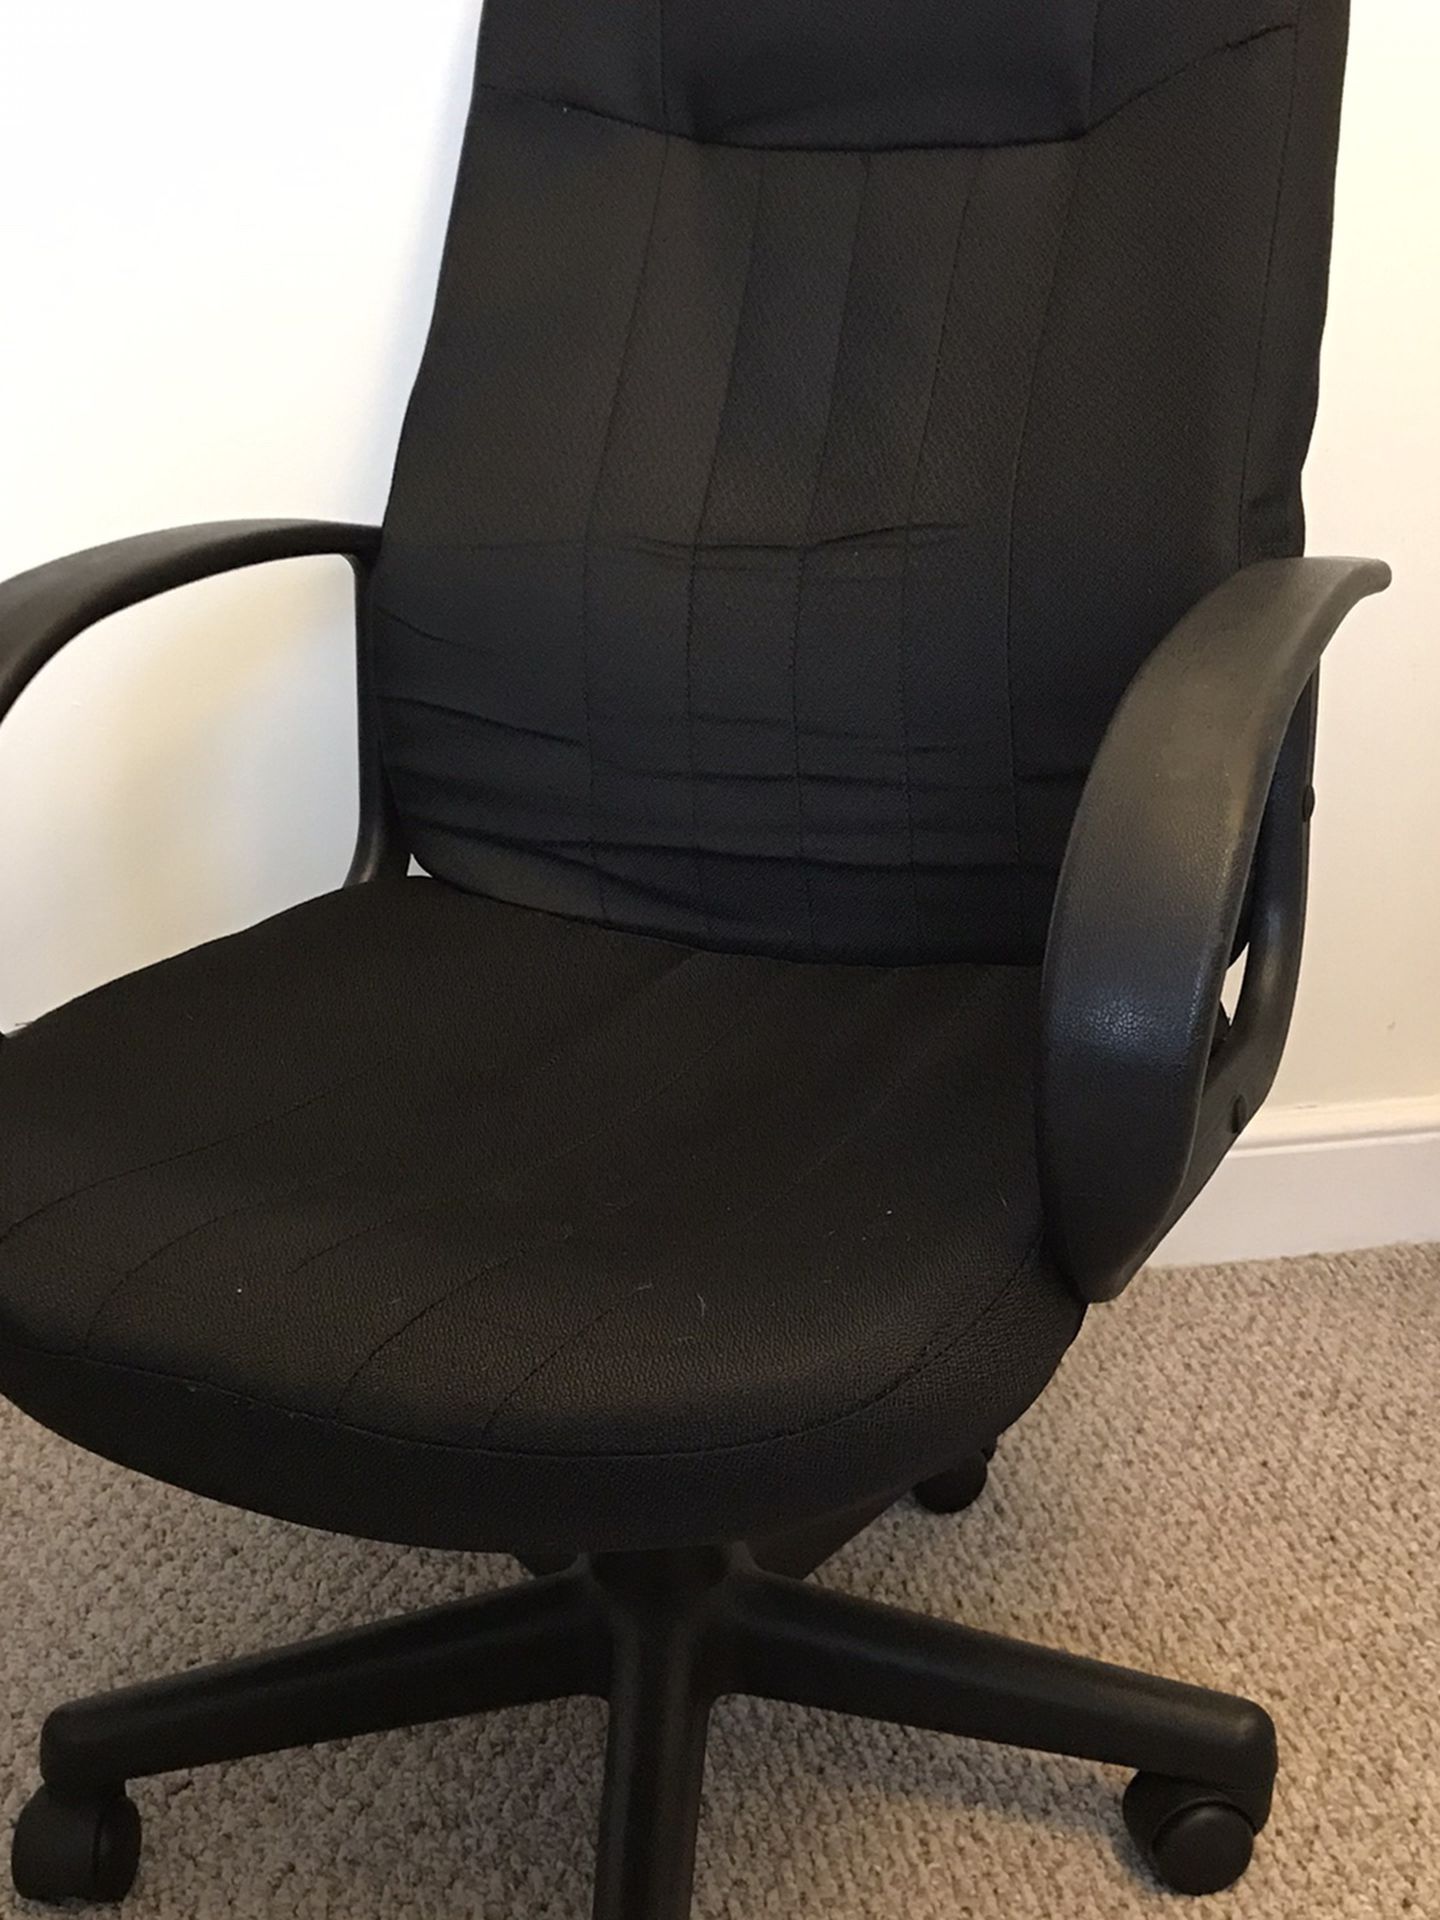 Office Depot Office Chair